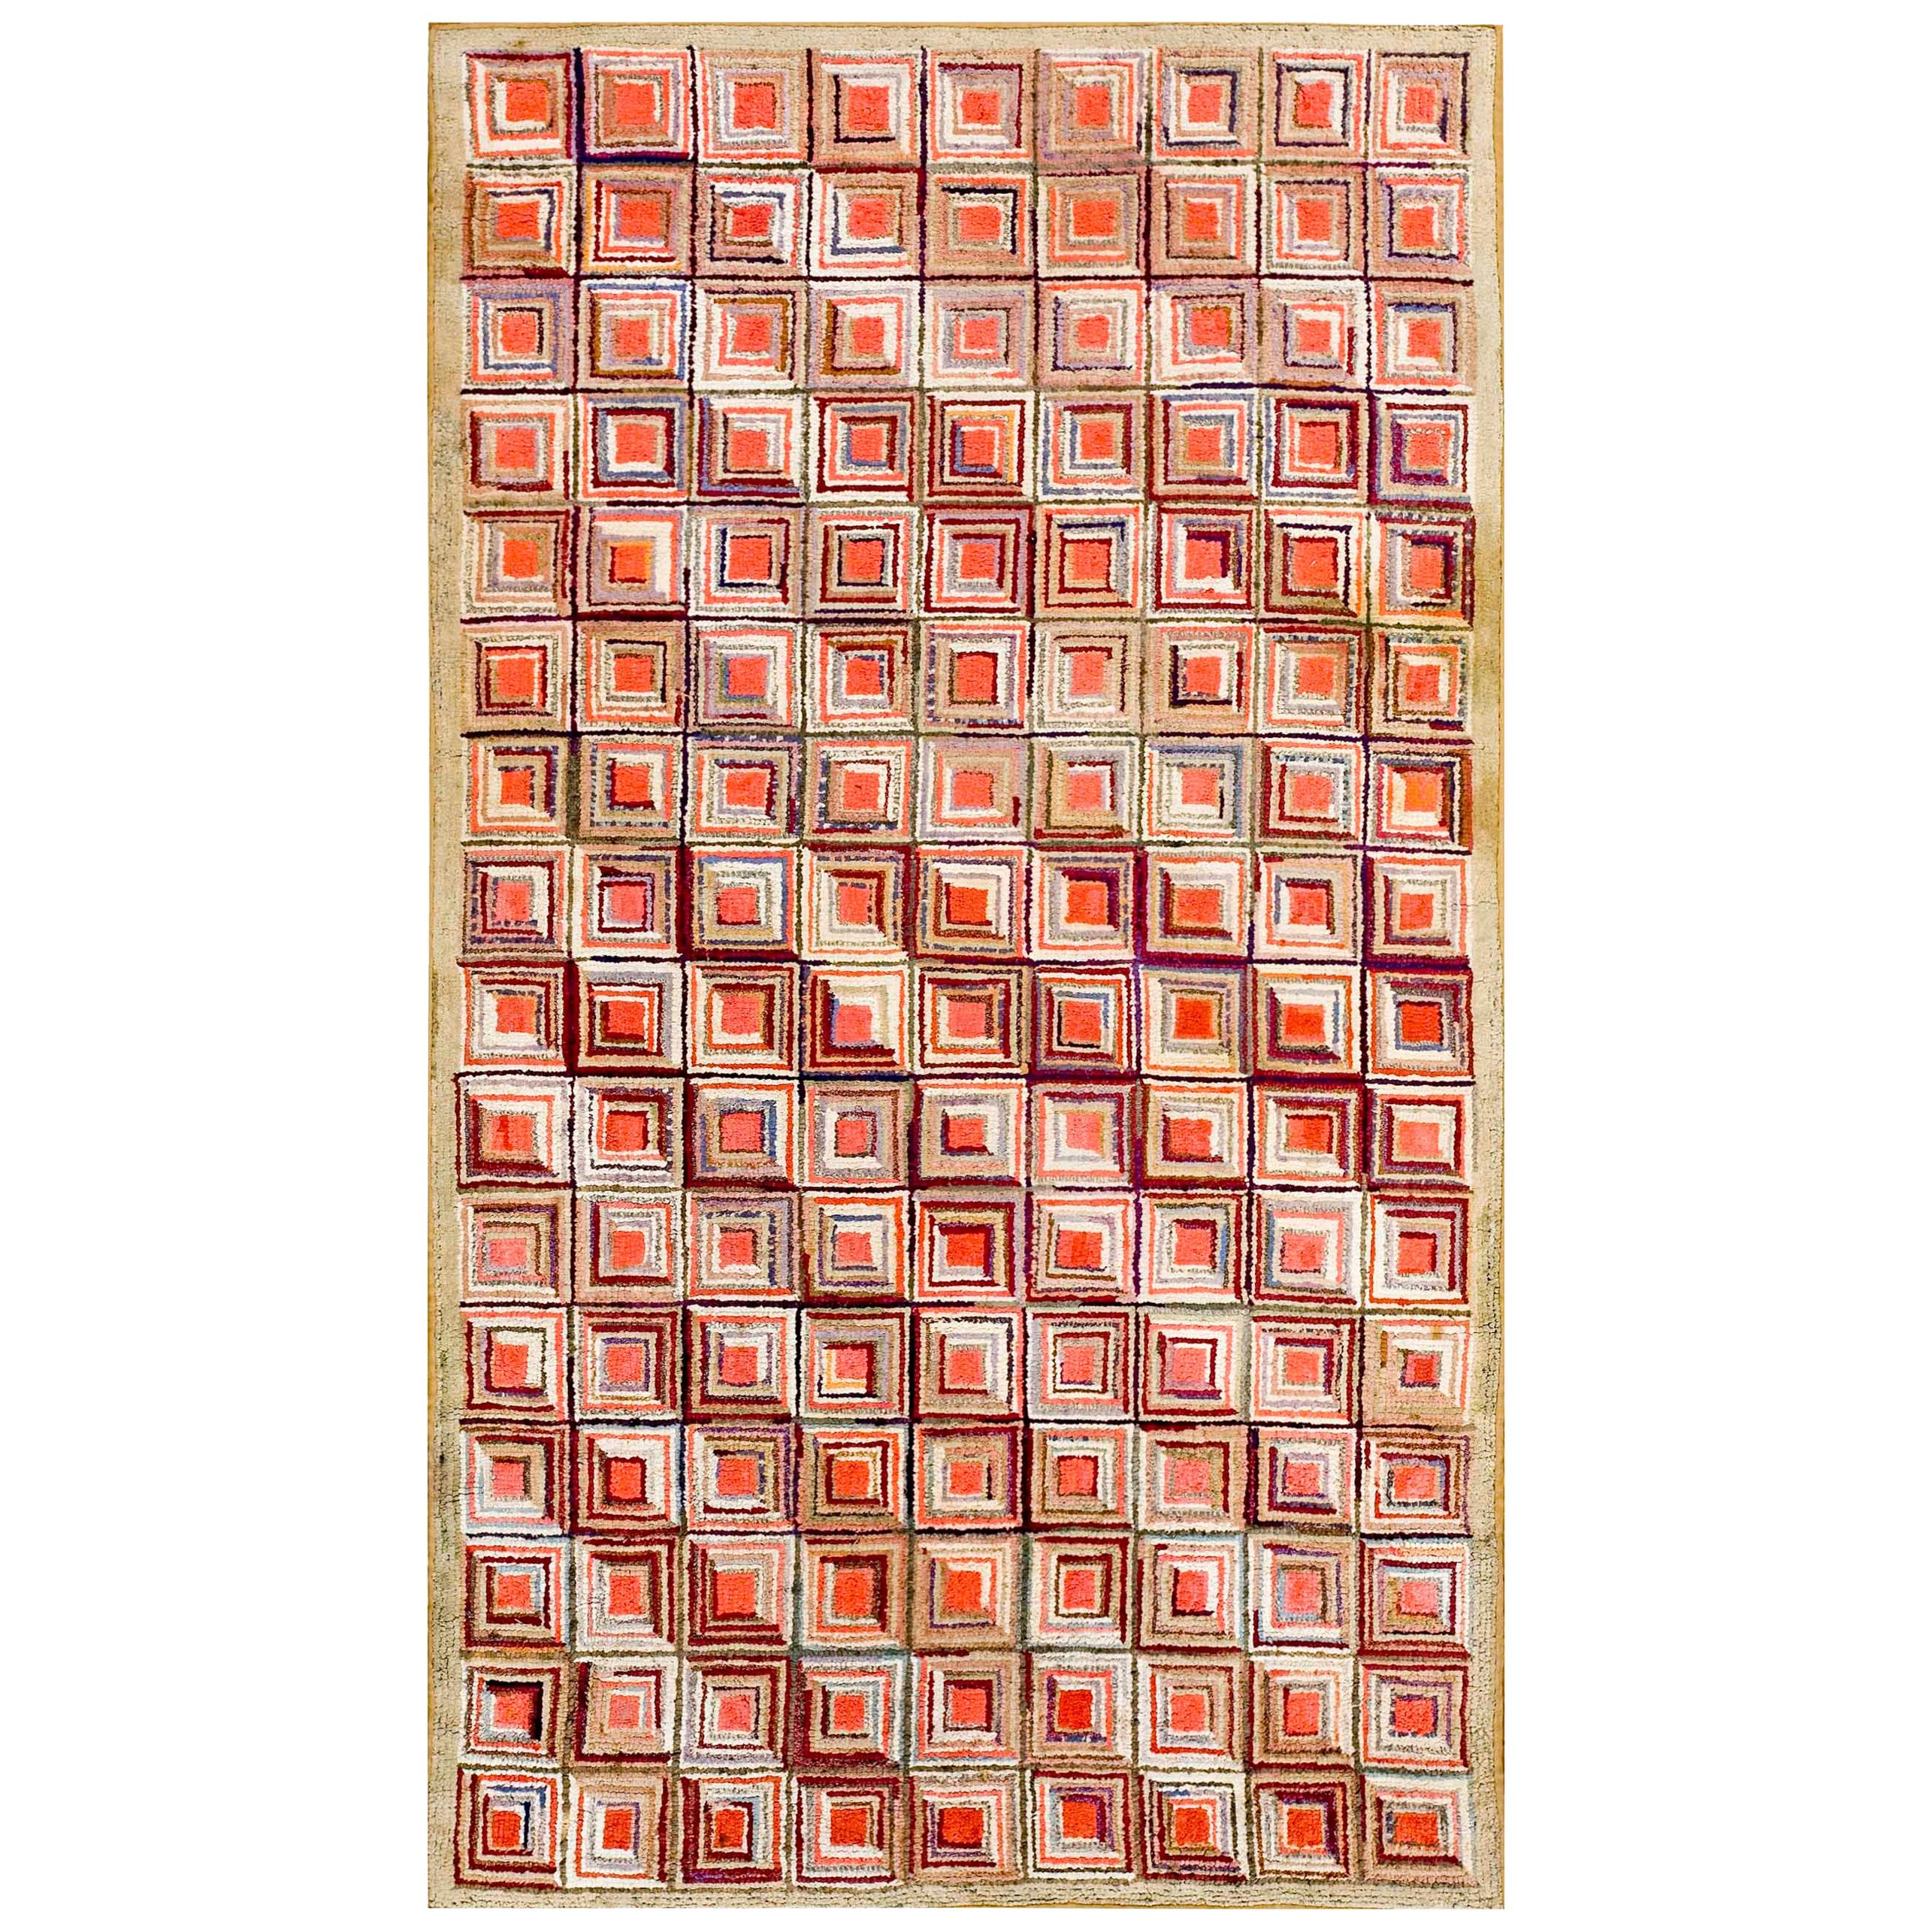 Amerikanischer Hakenteppich des frühen 20. Jahrhunderts ( 4' x 7' - 122 x 213 ) 